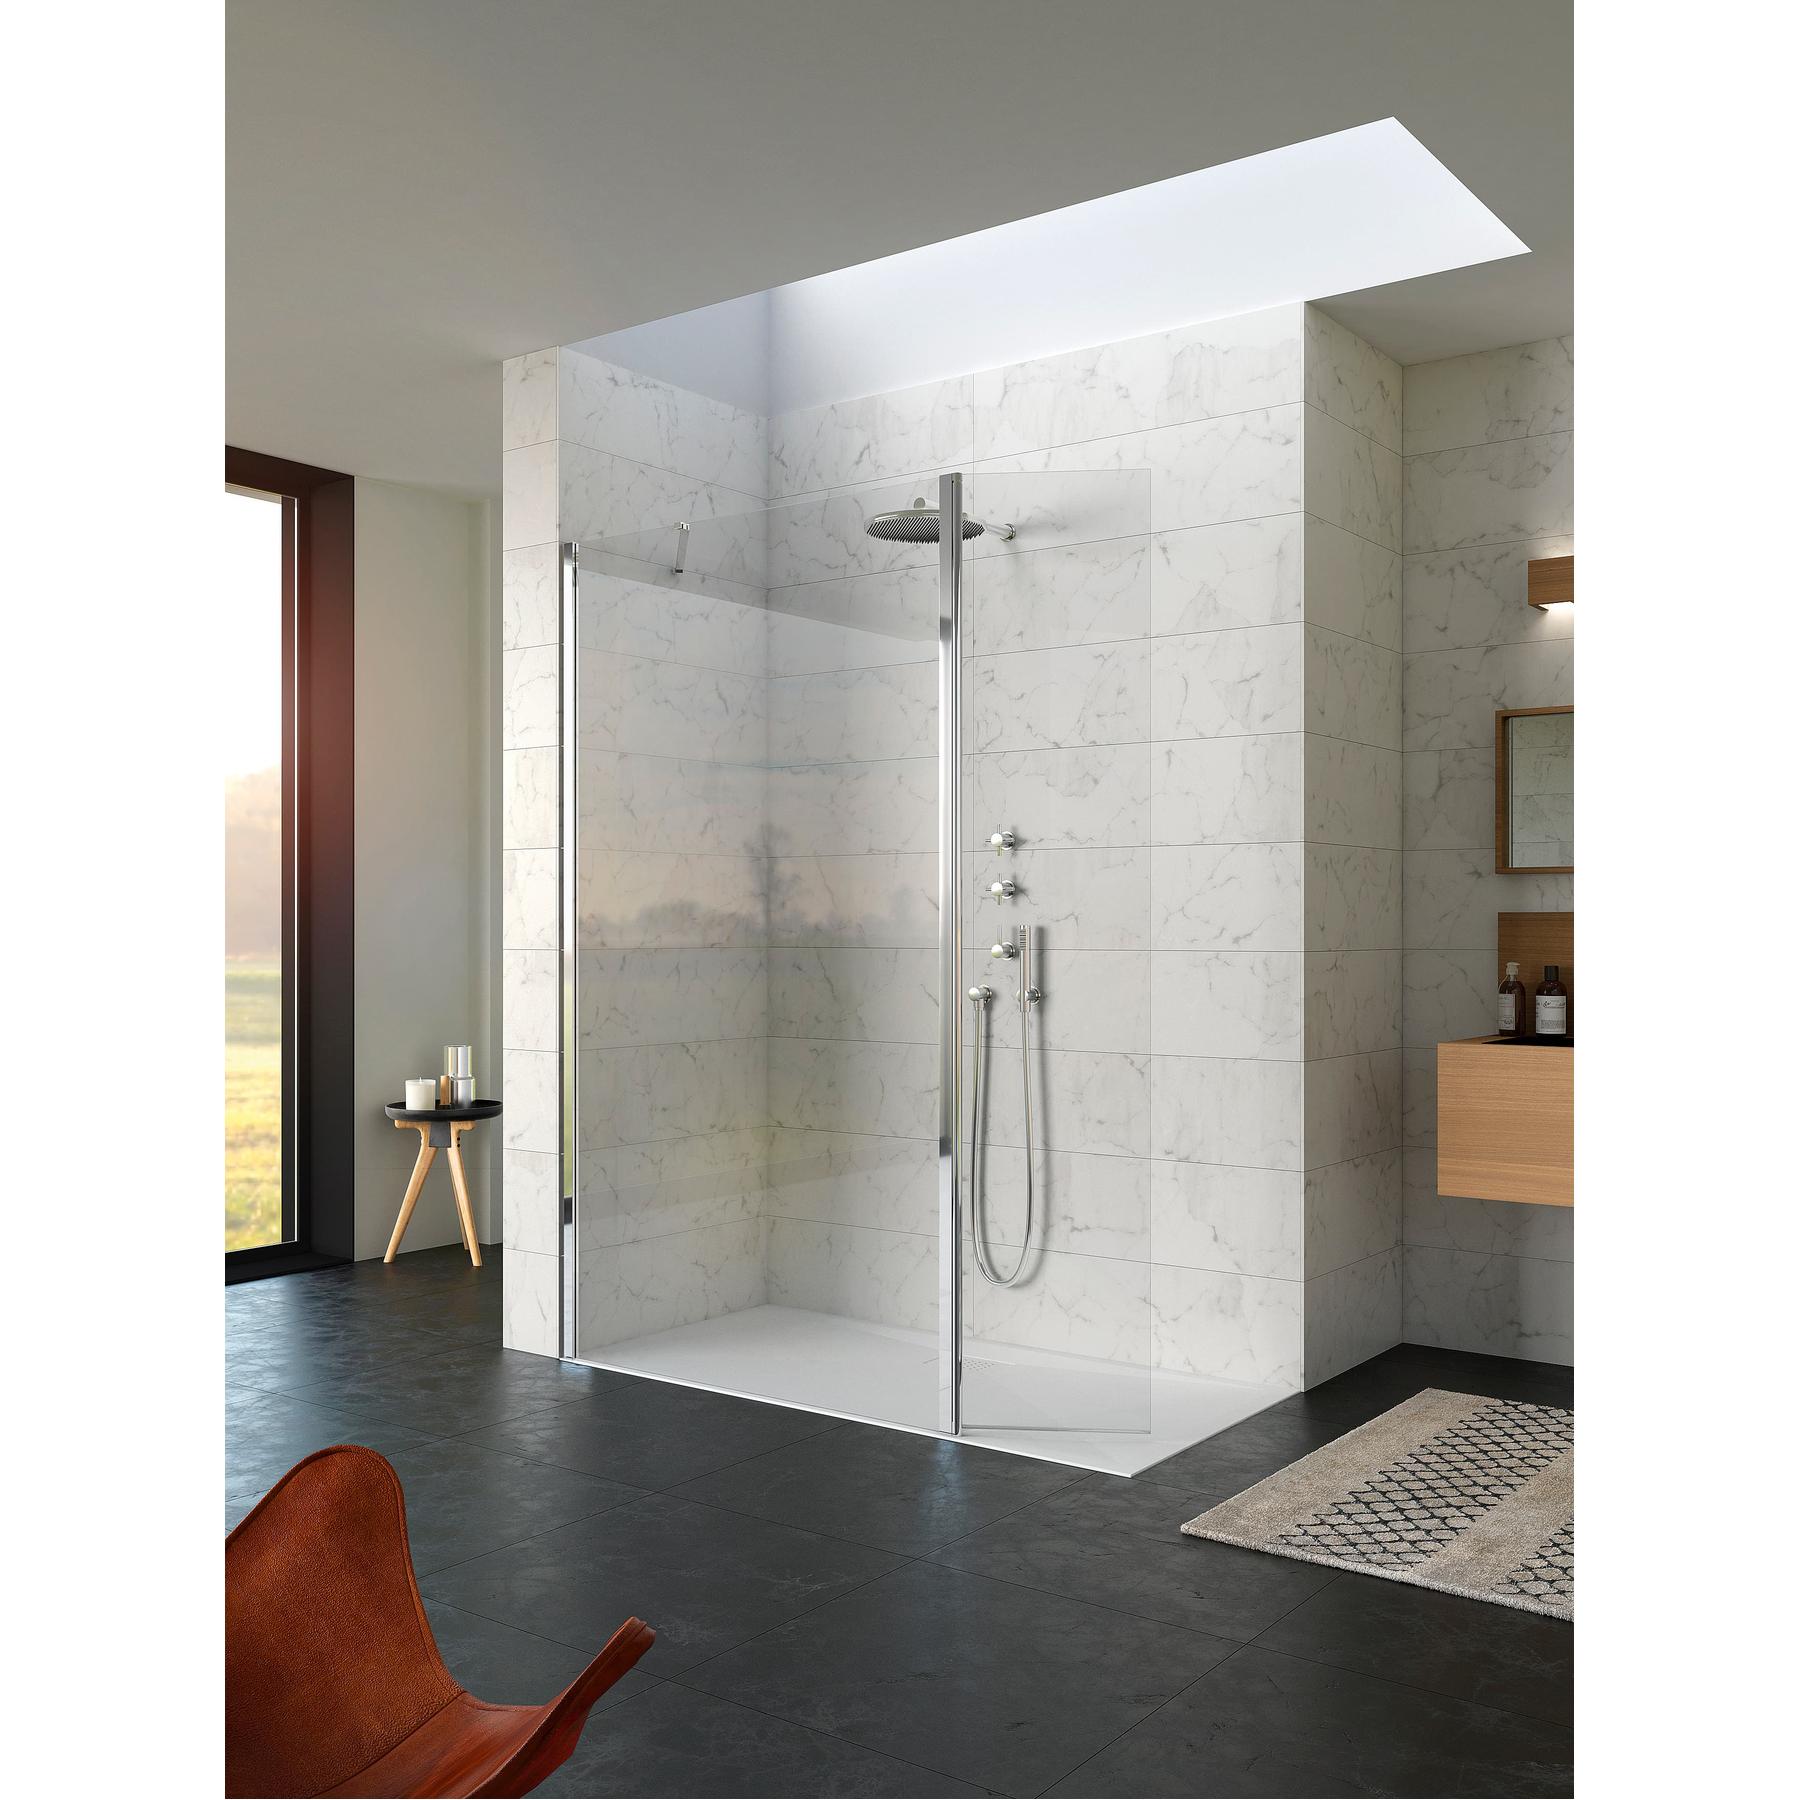 Paroi de douche fixe hauteur 2m largeur 1.60m avec porte pivotante à 180 KINEQUARTZ Duo fixation à gauche sur profilé mural chromé verre transparent